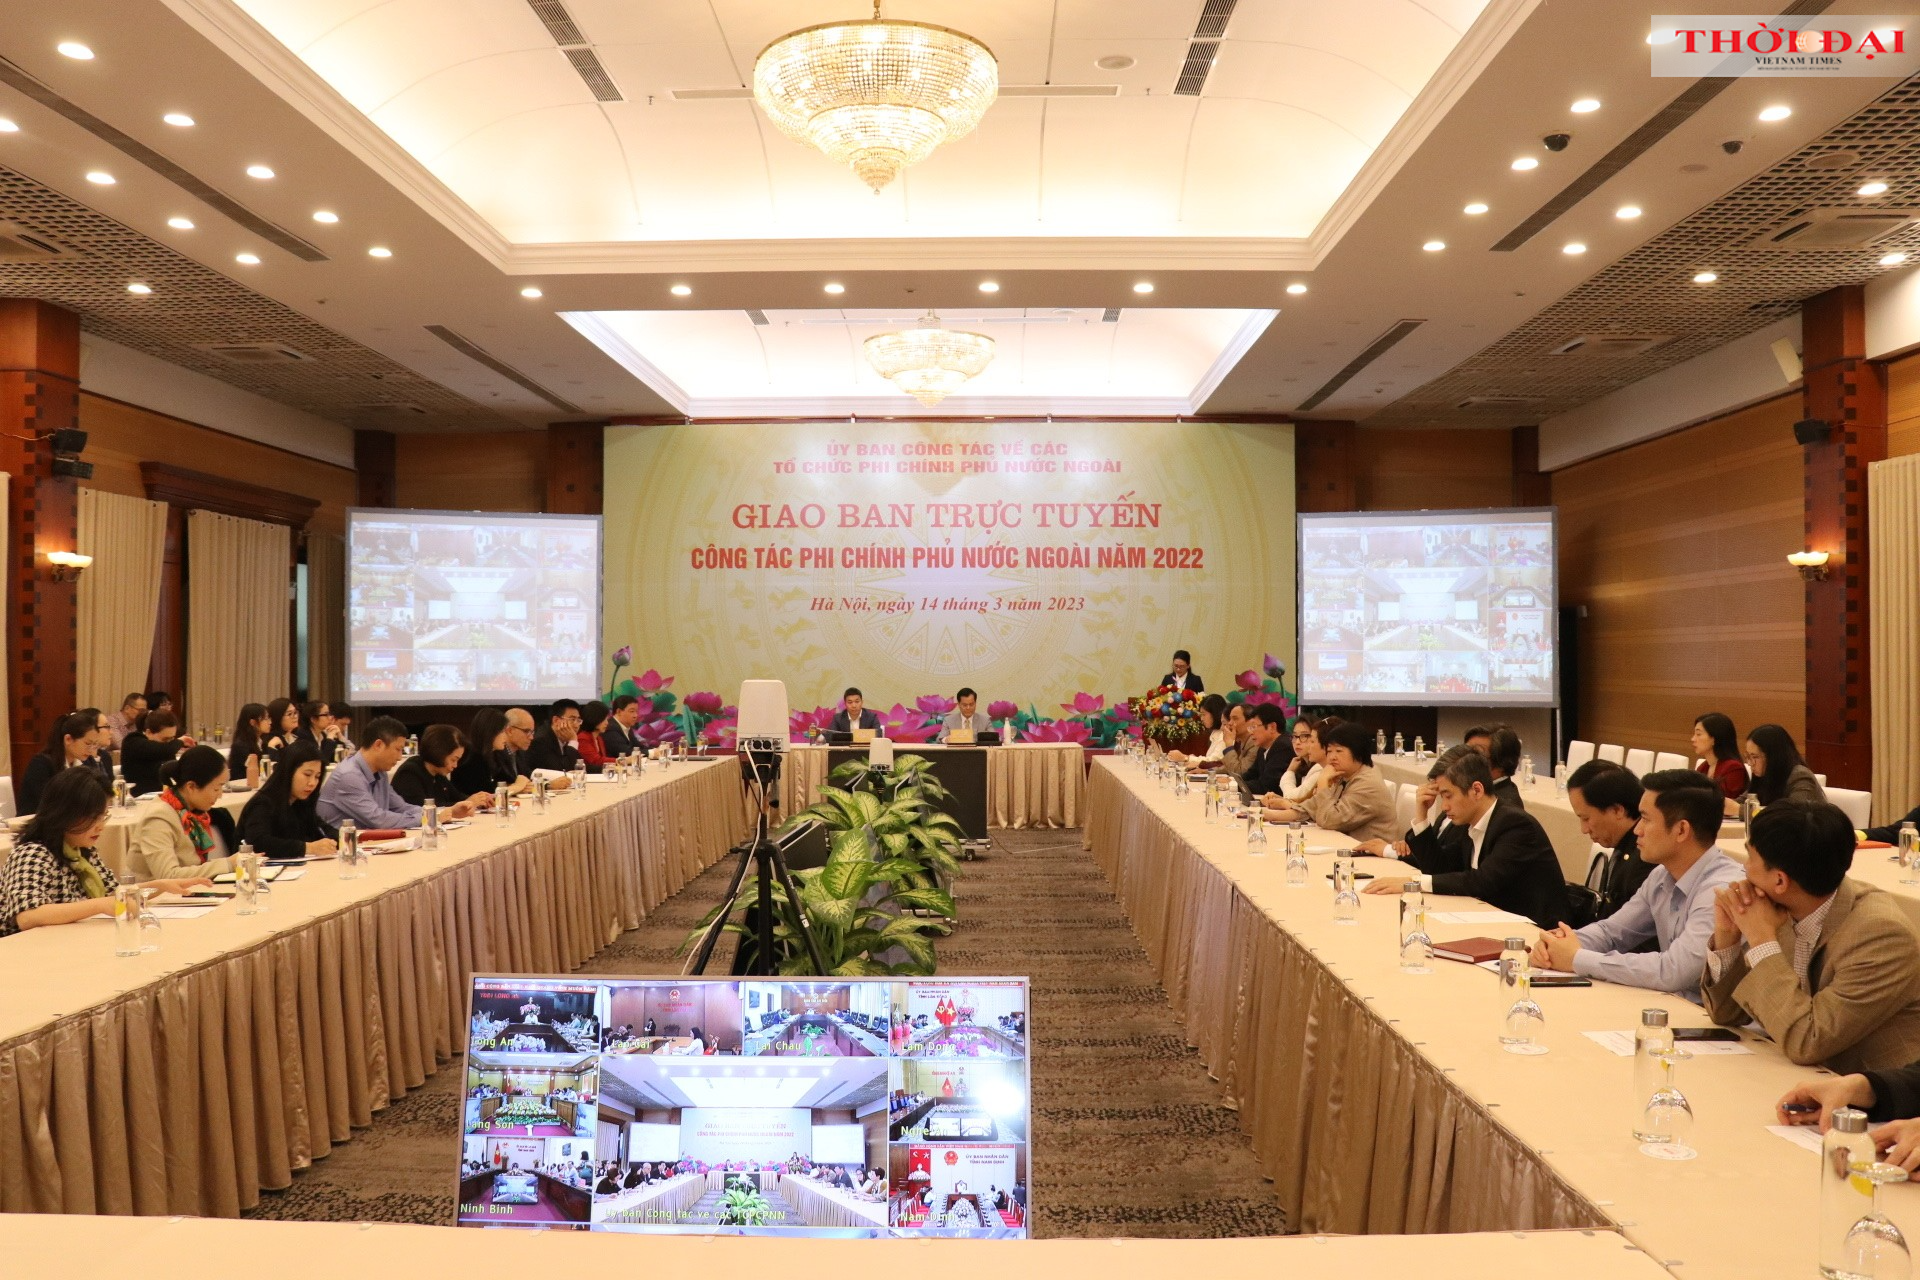 Hội nghị giao ban công tác PCPNN năm 2022 diễn ra ngày14/3/2023 tại Hà Nội và trực tuyến 63 điểm cầu địa phương (Ảnh: Thu Hà).